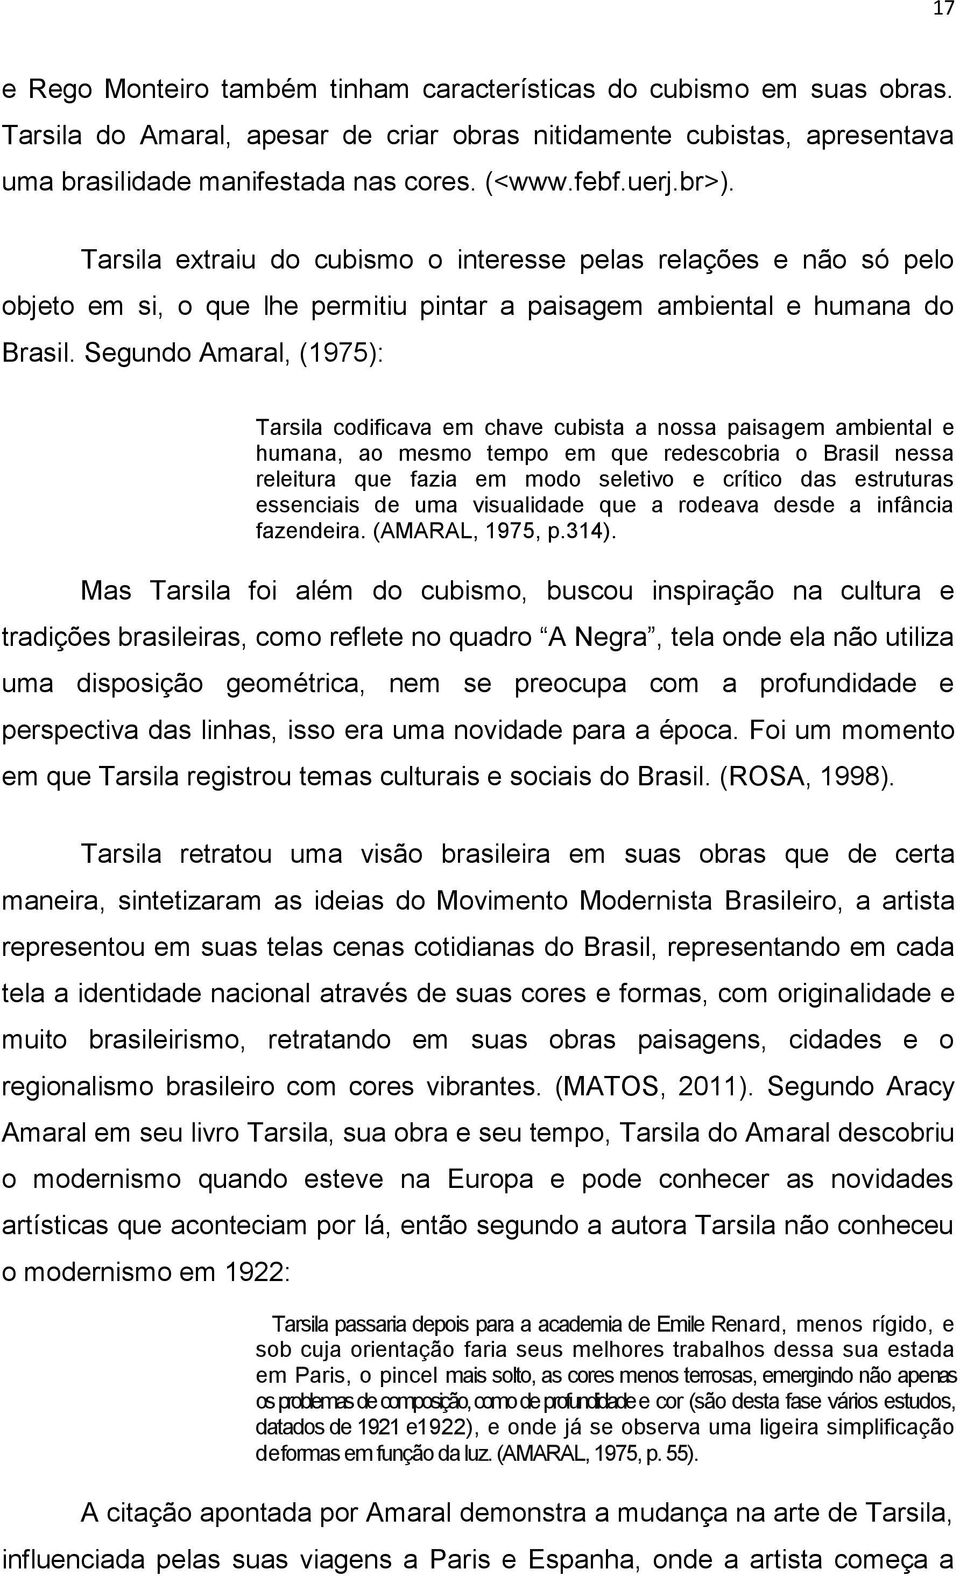 Segundo Amaral, (1975): Tarsila codificava em chave cubista a nossa paisagem ambiental e humana, ao mesmo tempo em que redescobria o Brasil nessa releitura que fazia em modo seletivo e crítico das